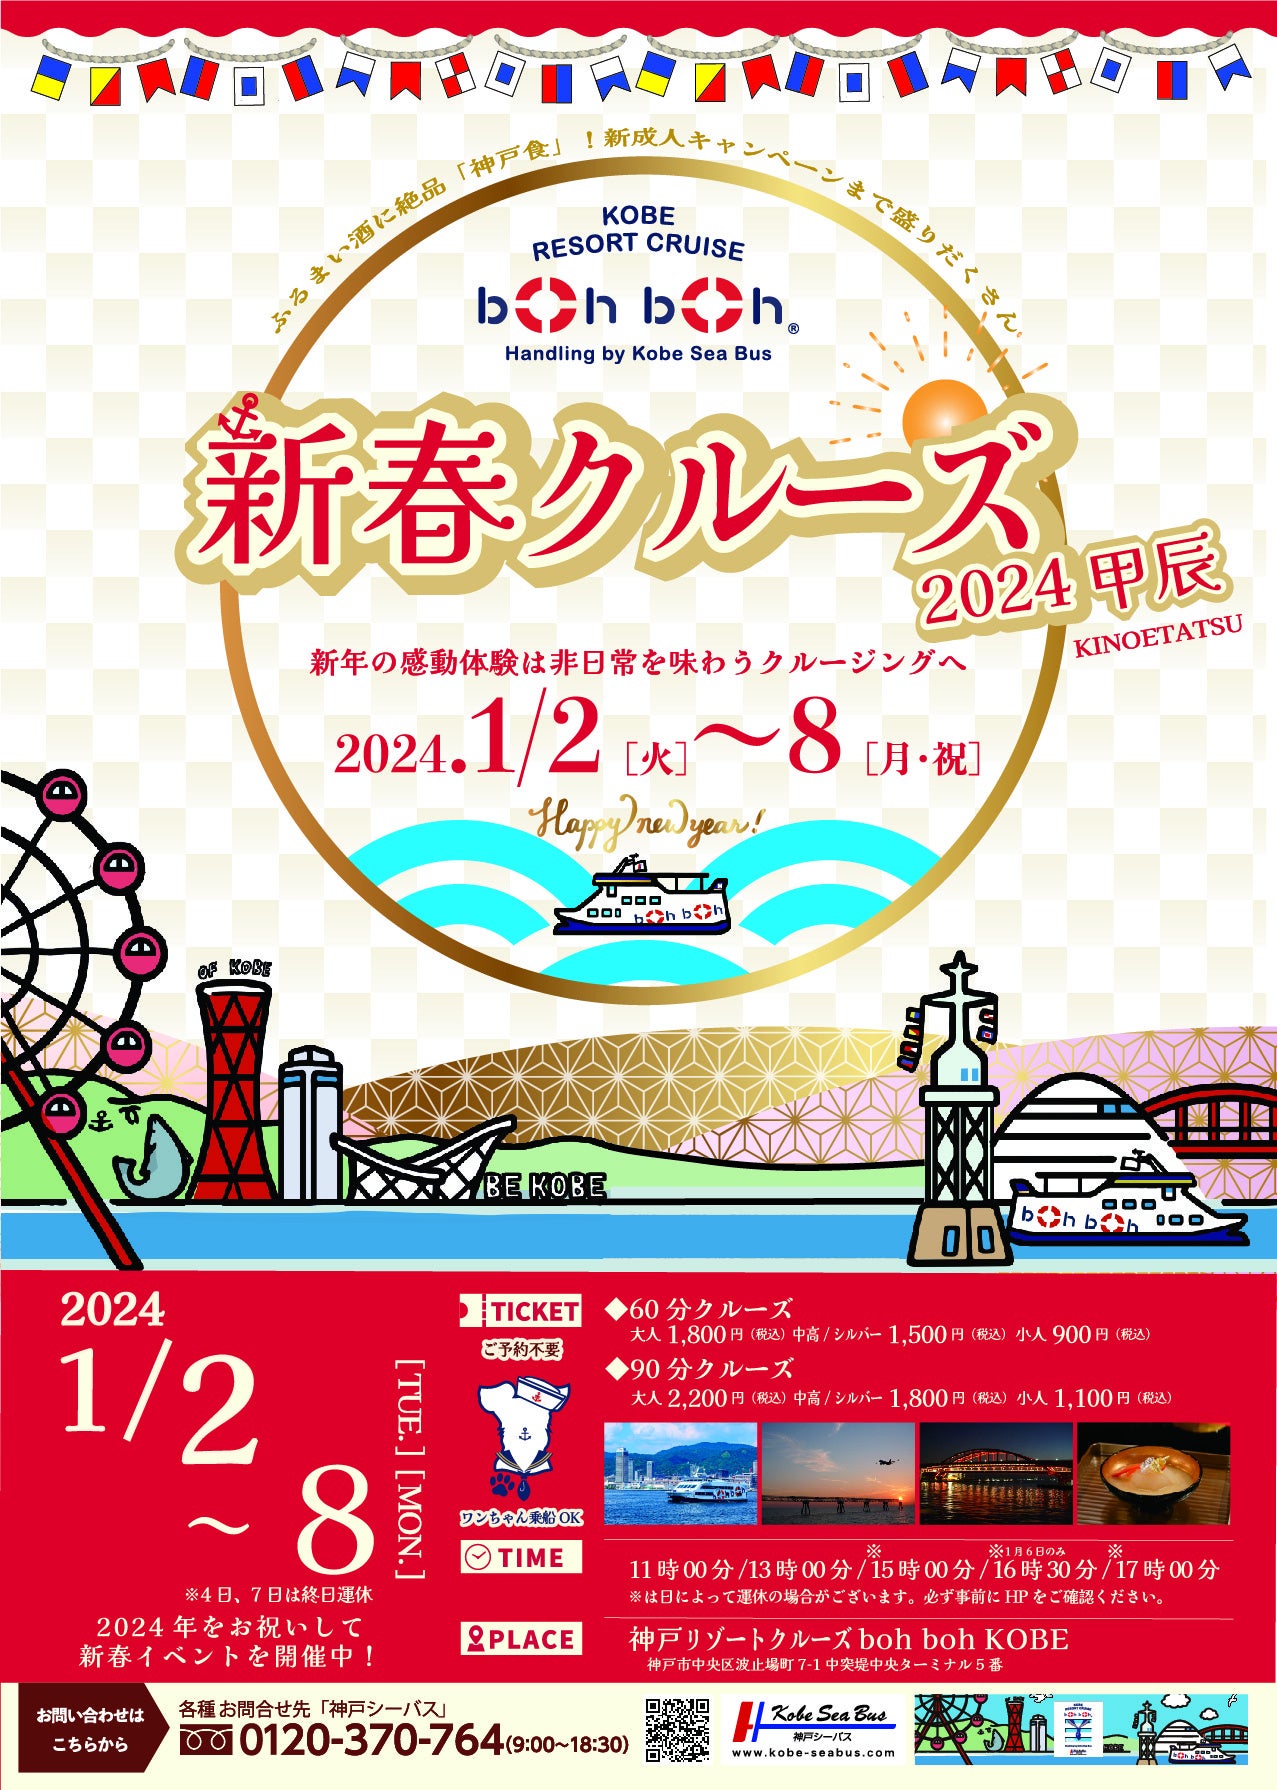 神戸シーバス boh boh KOBEで心躍る新年の感動体験を！「新春クルーズ2024甲辰」を開催！